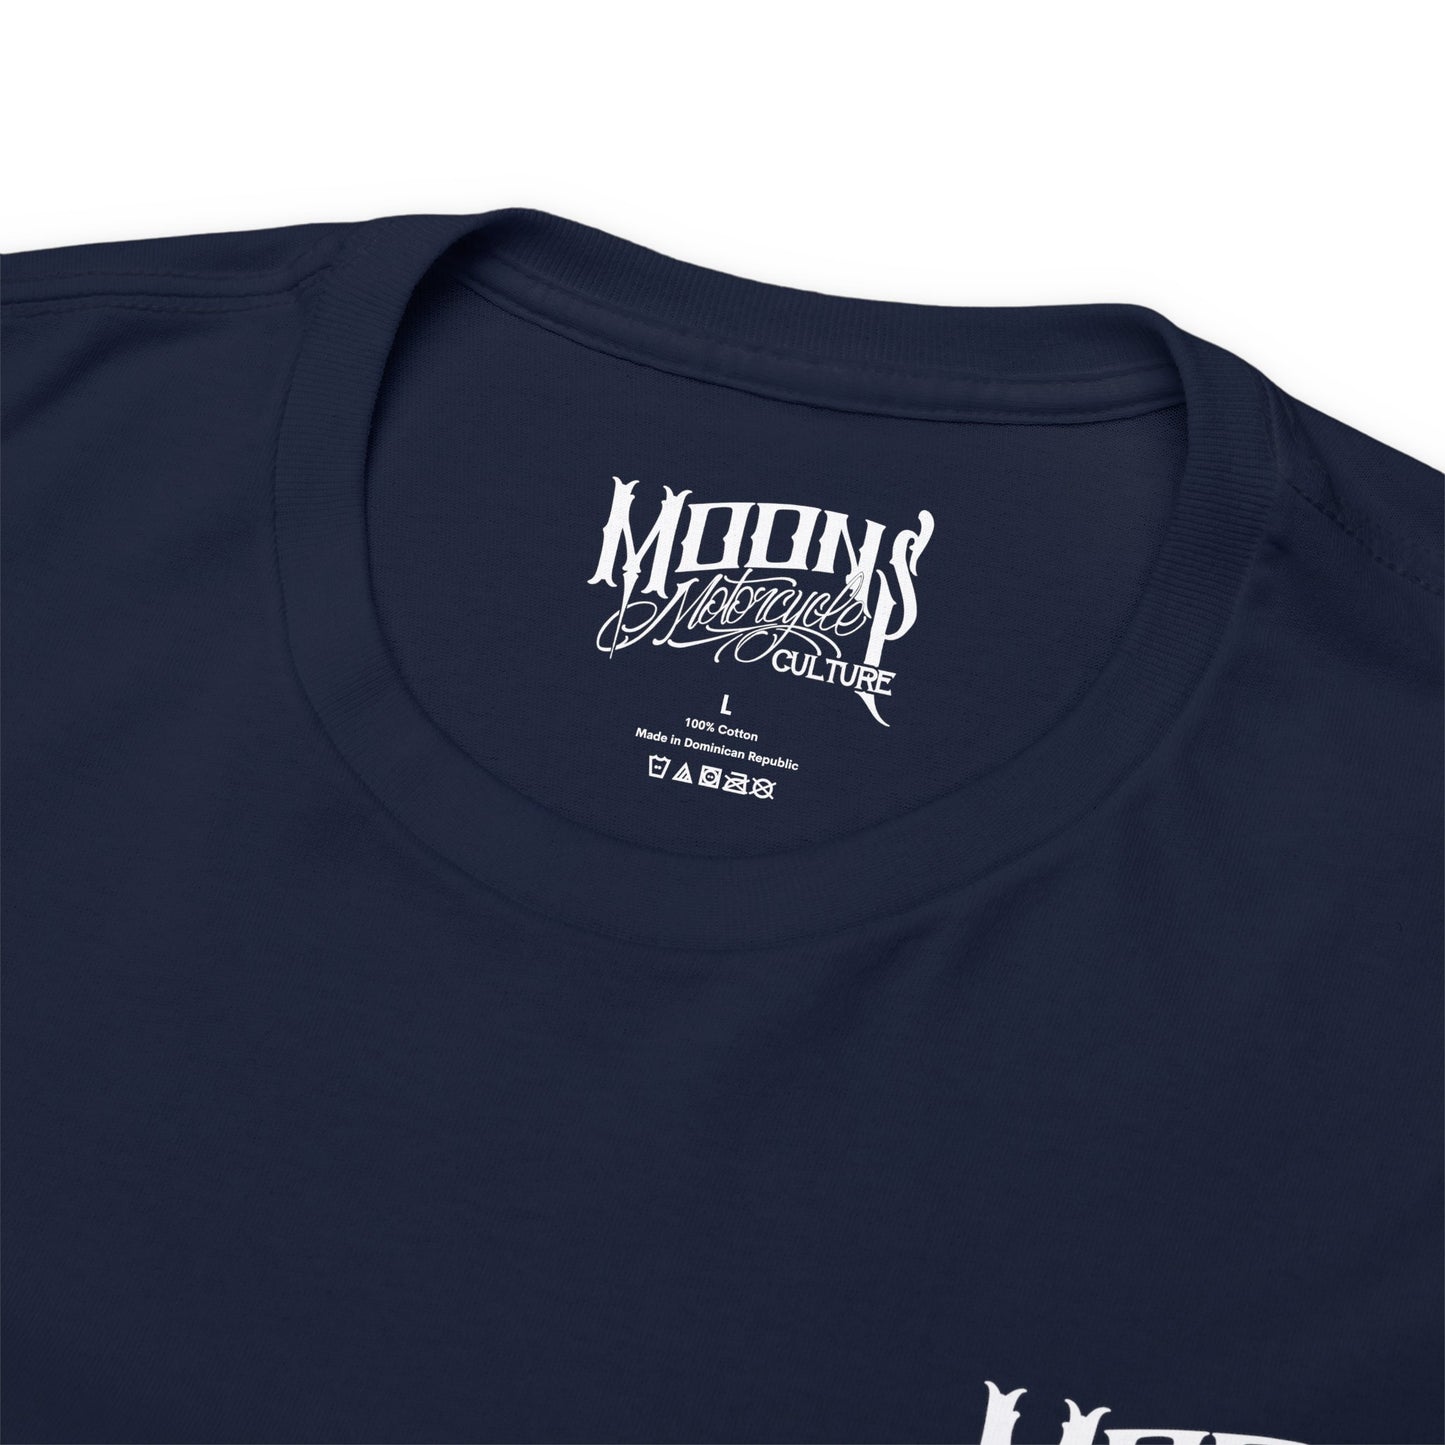 MOONSMC® FXDT / T-SPORT "MURICA" T-Shirt